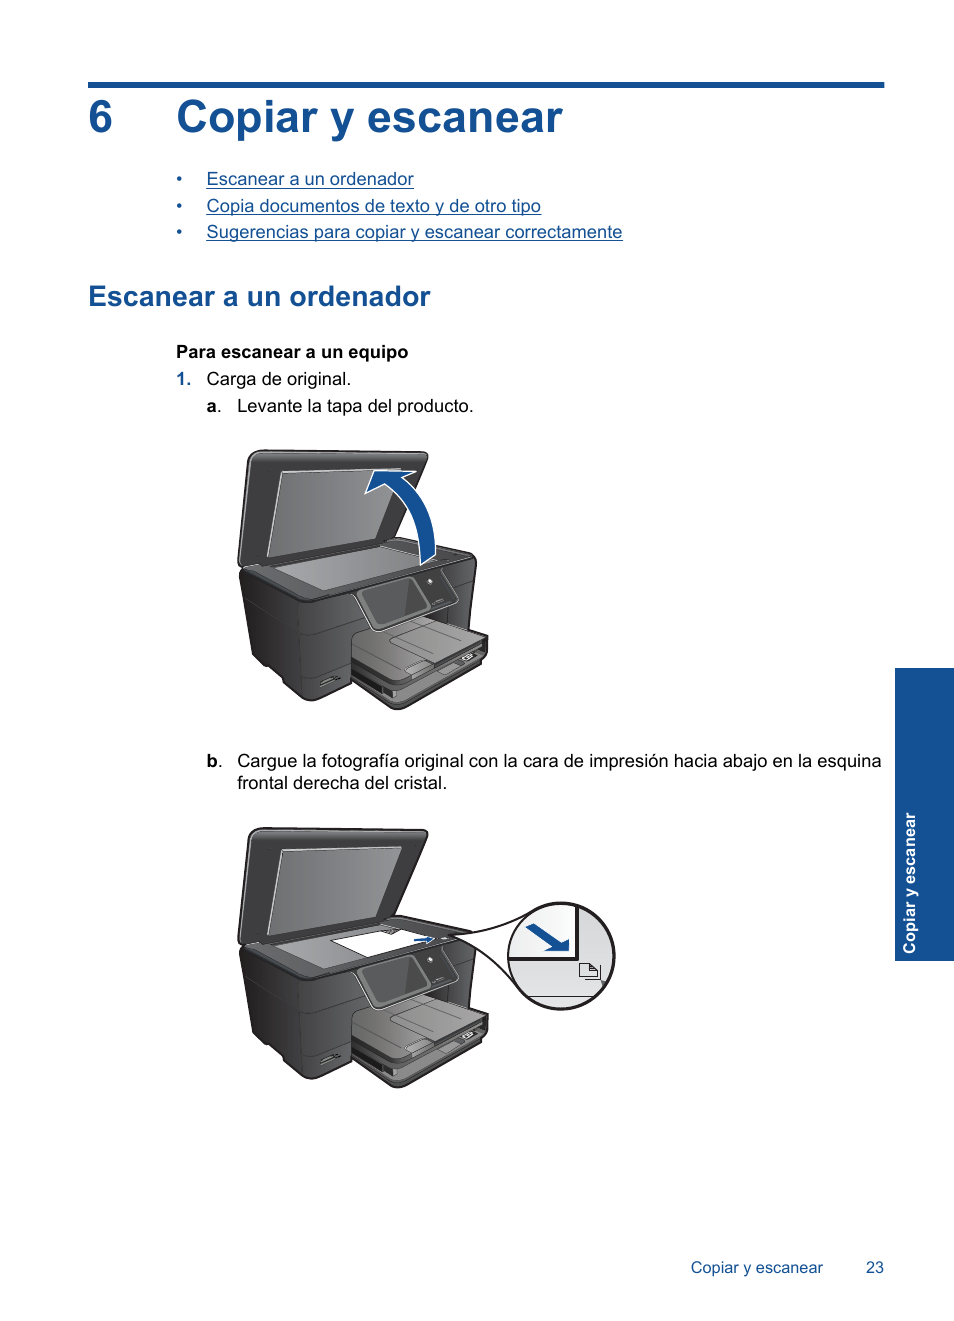 Copiar y escanear, Escanear a un ordenador, 6 copiar y escanear | HP  Impresora e-Todo-en-Uno HP Photosmart Plus - B210a User Manual | Page 25 /  70 | Original mode